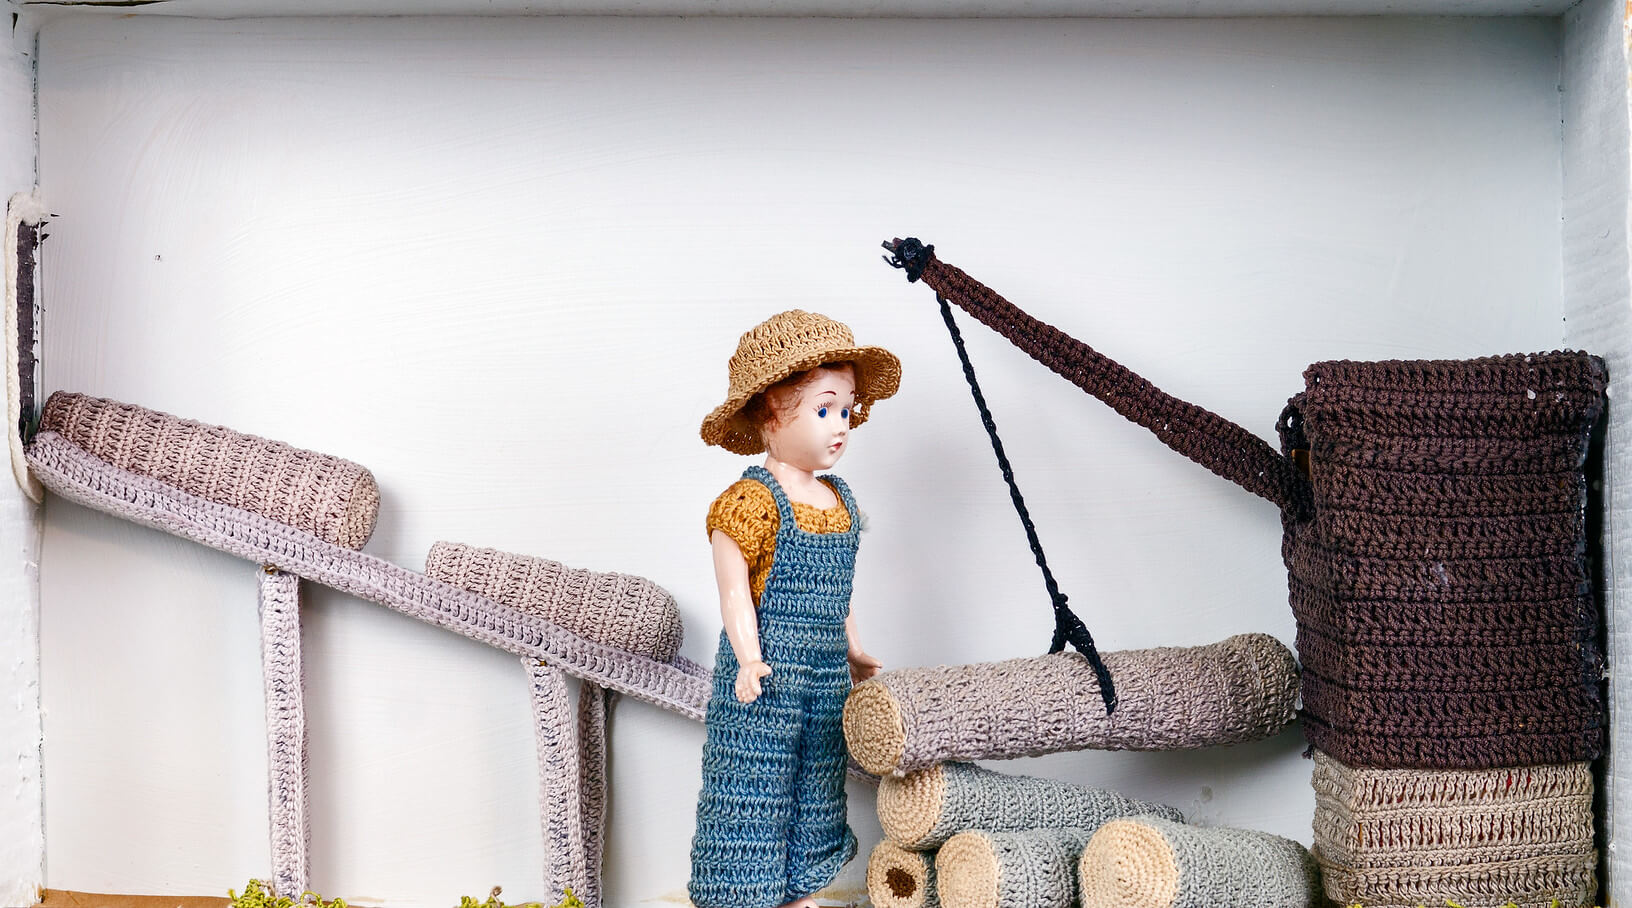 crocheted sawmill scene